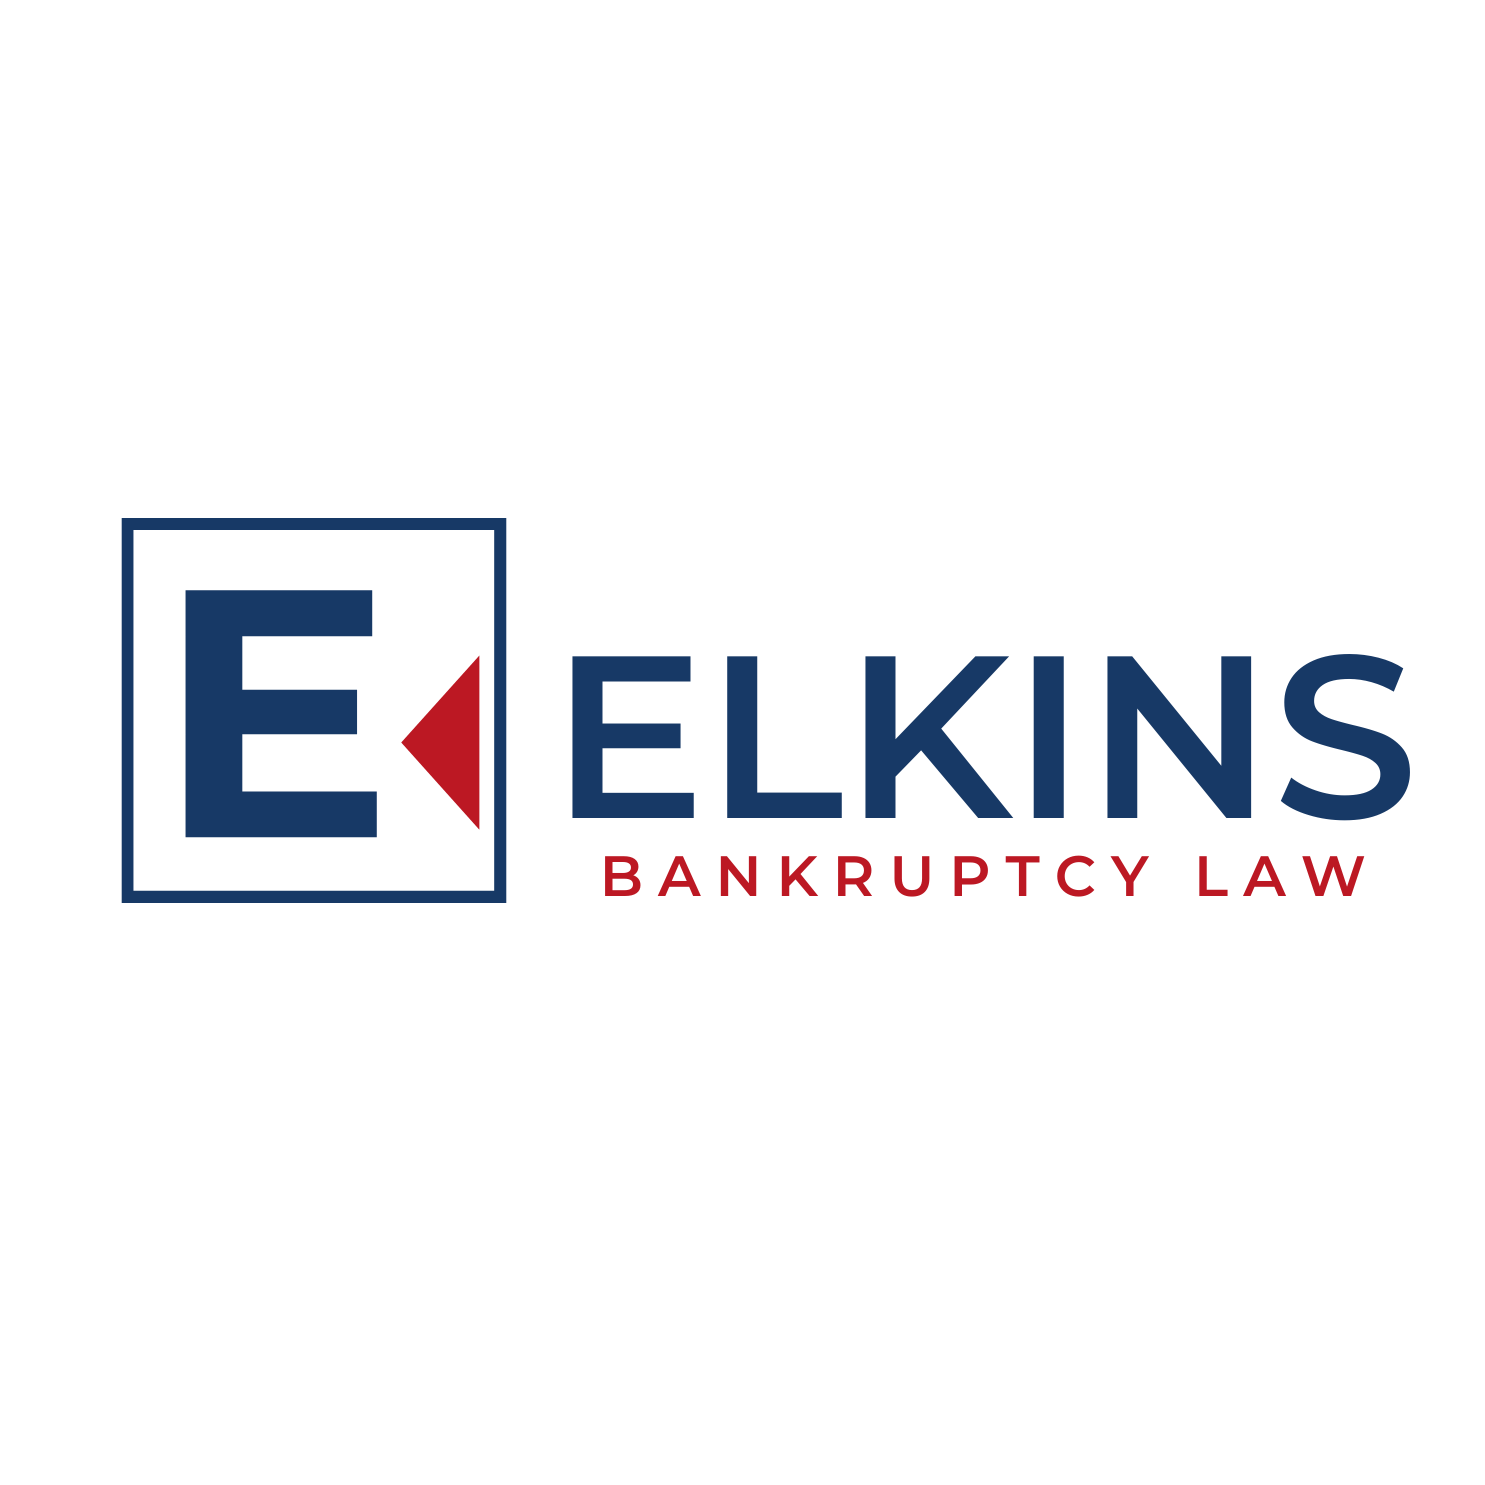 Elkins Bankruptcy Law